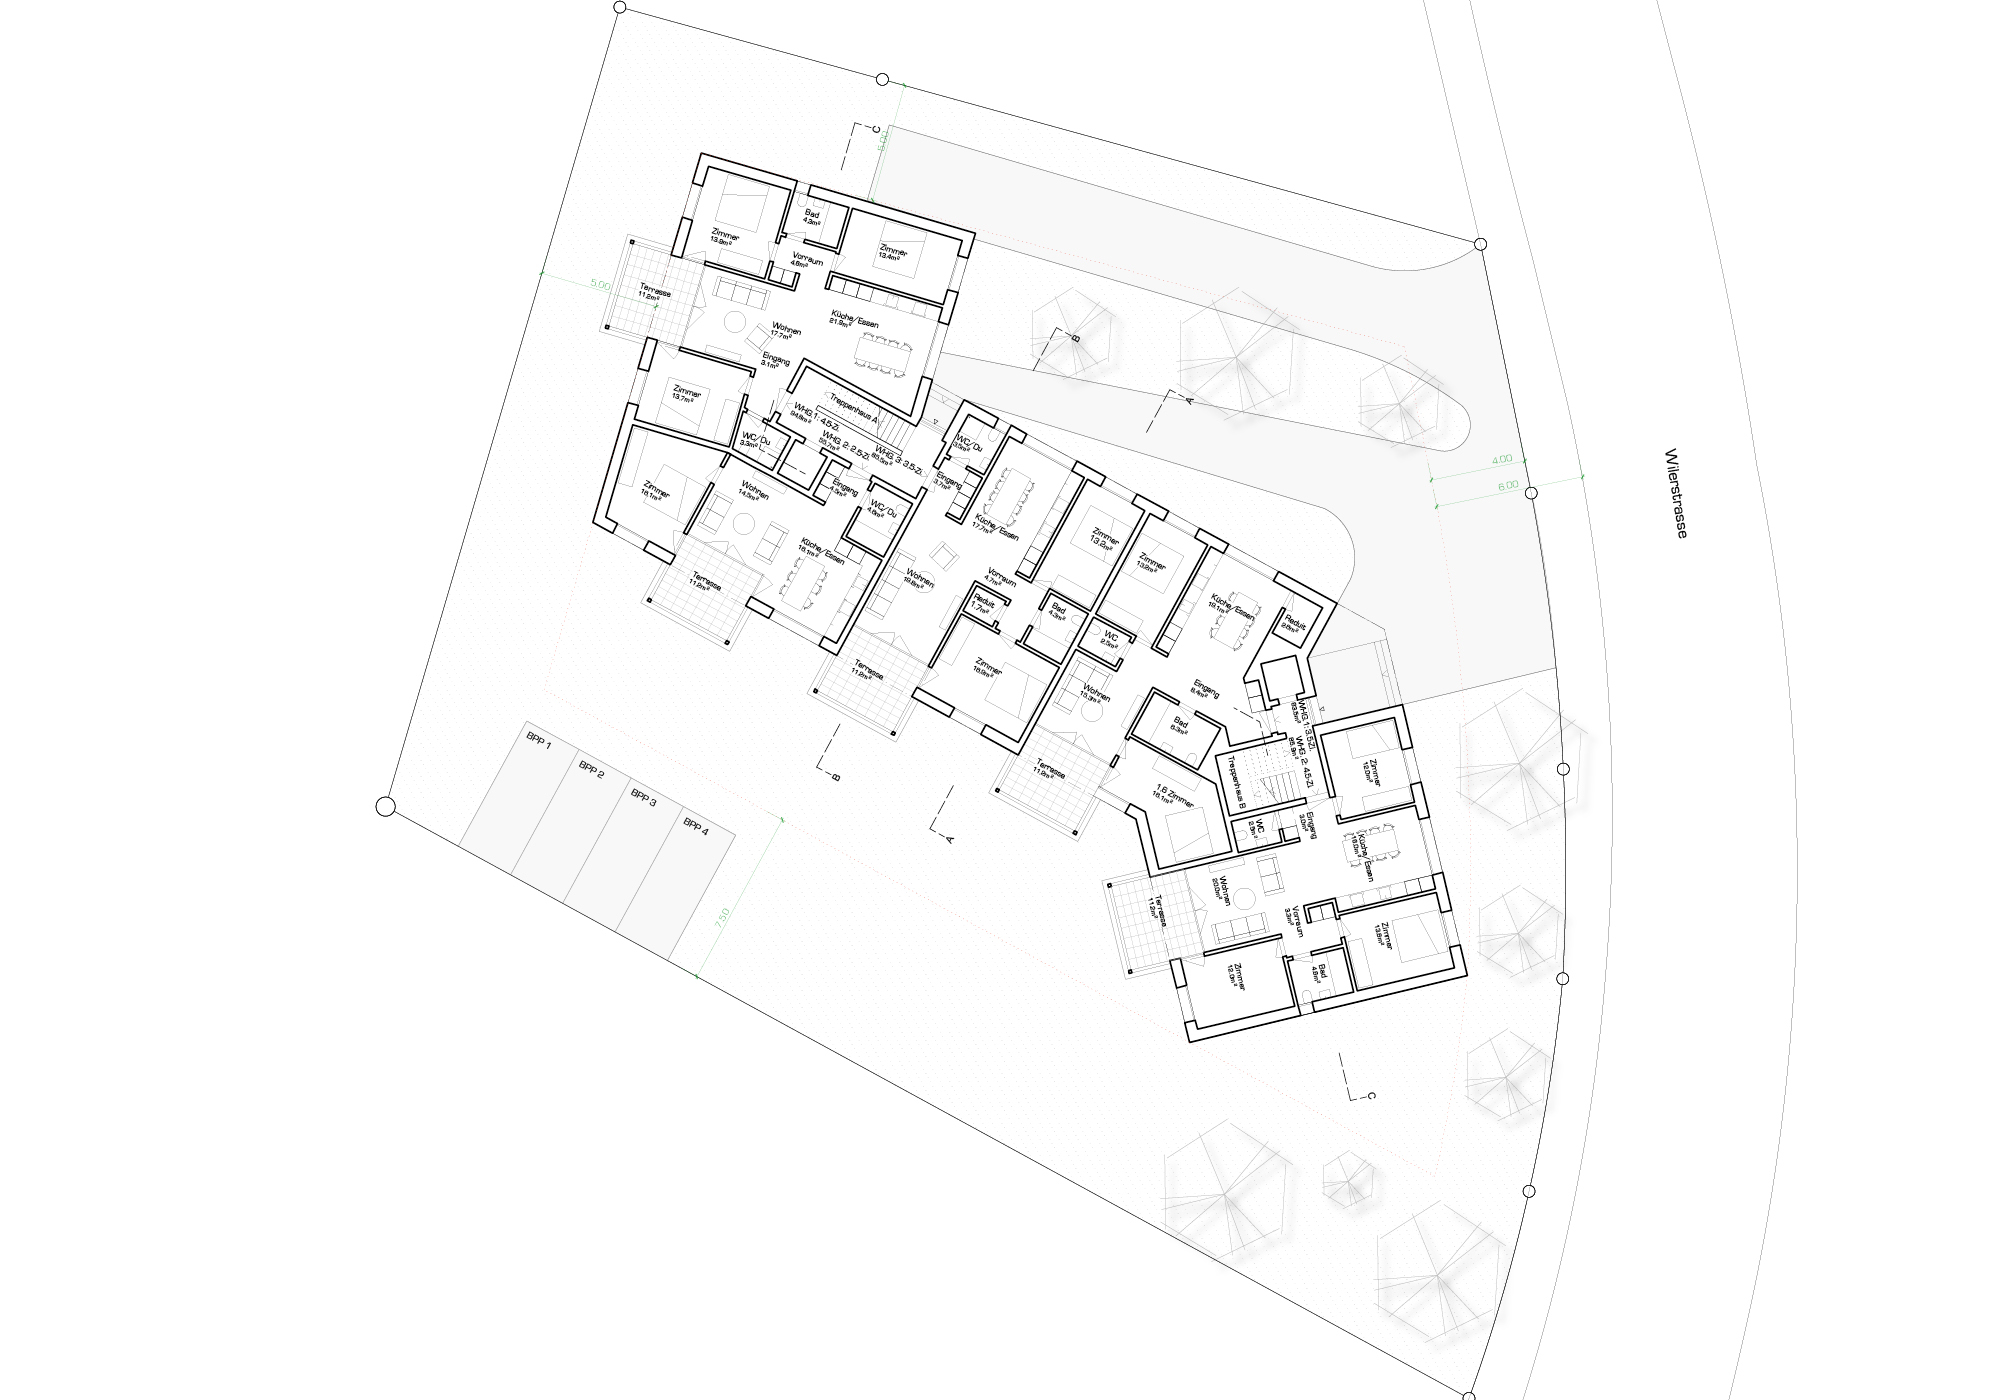 DOA – Davide Orlando Architektur GmbH – WETTBEWERB LUNA